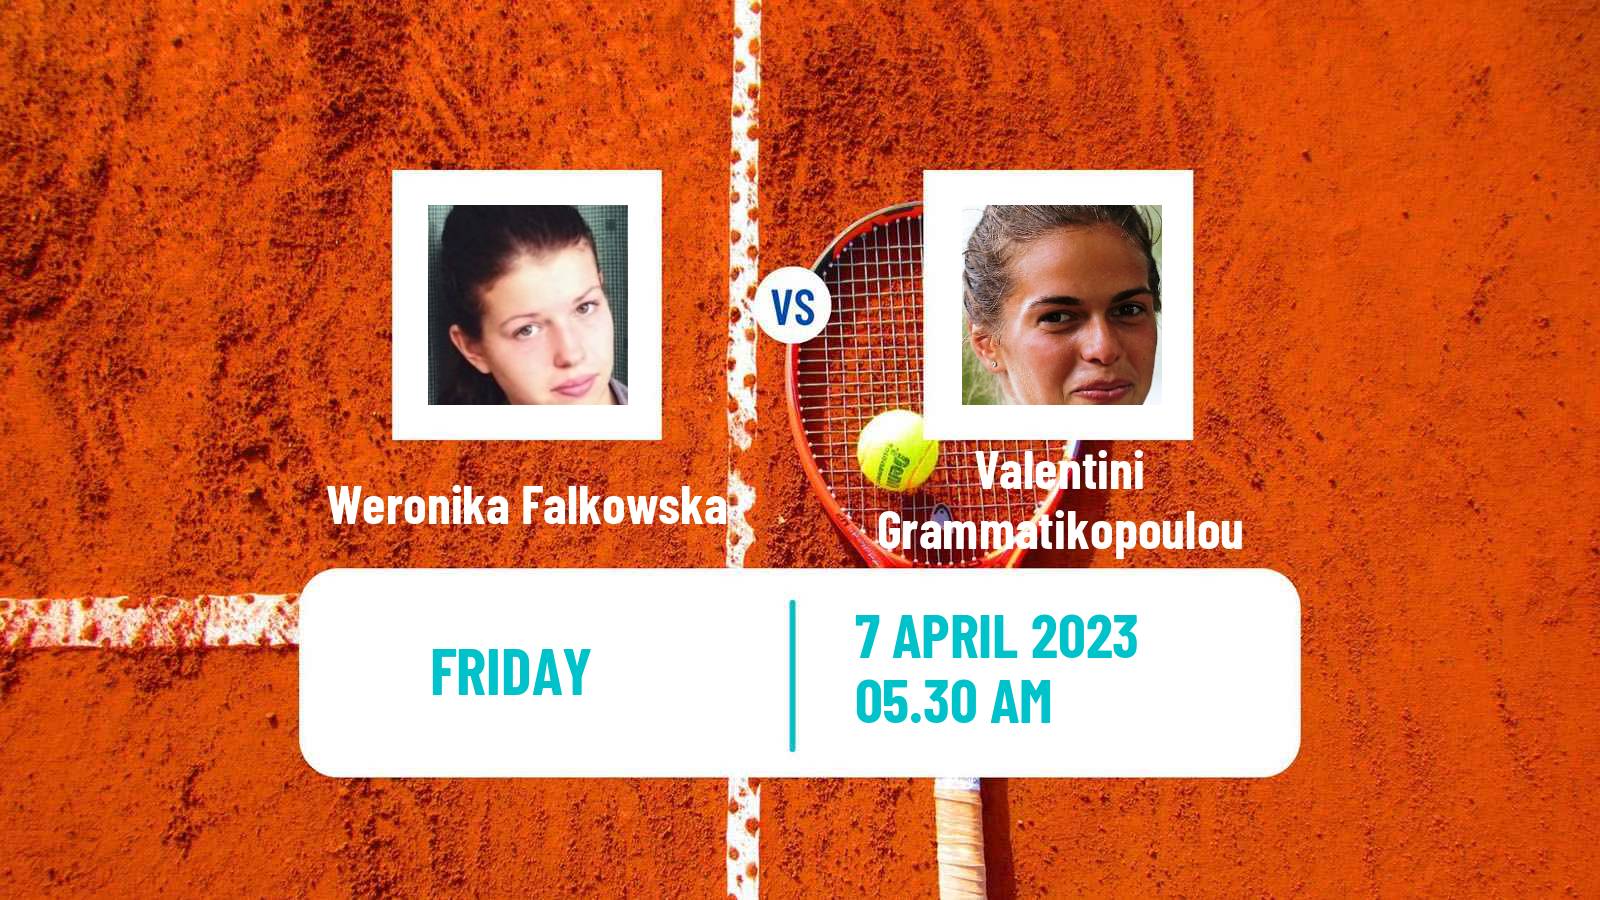 Tennis ITF Tournaments Weronika Falkowska - Valentini Grammatikopoulou